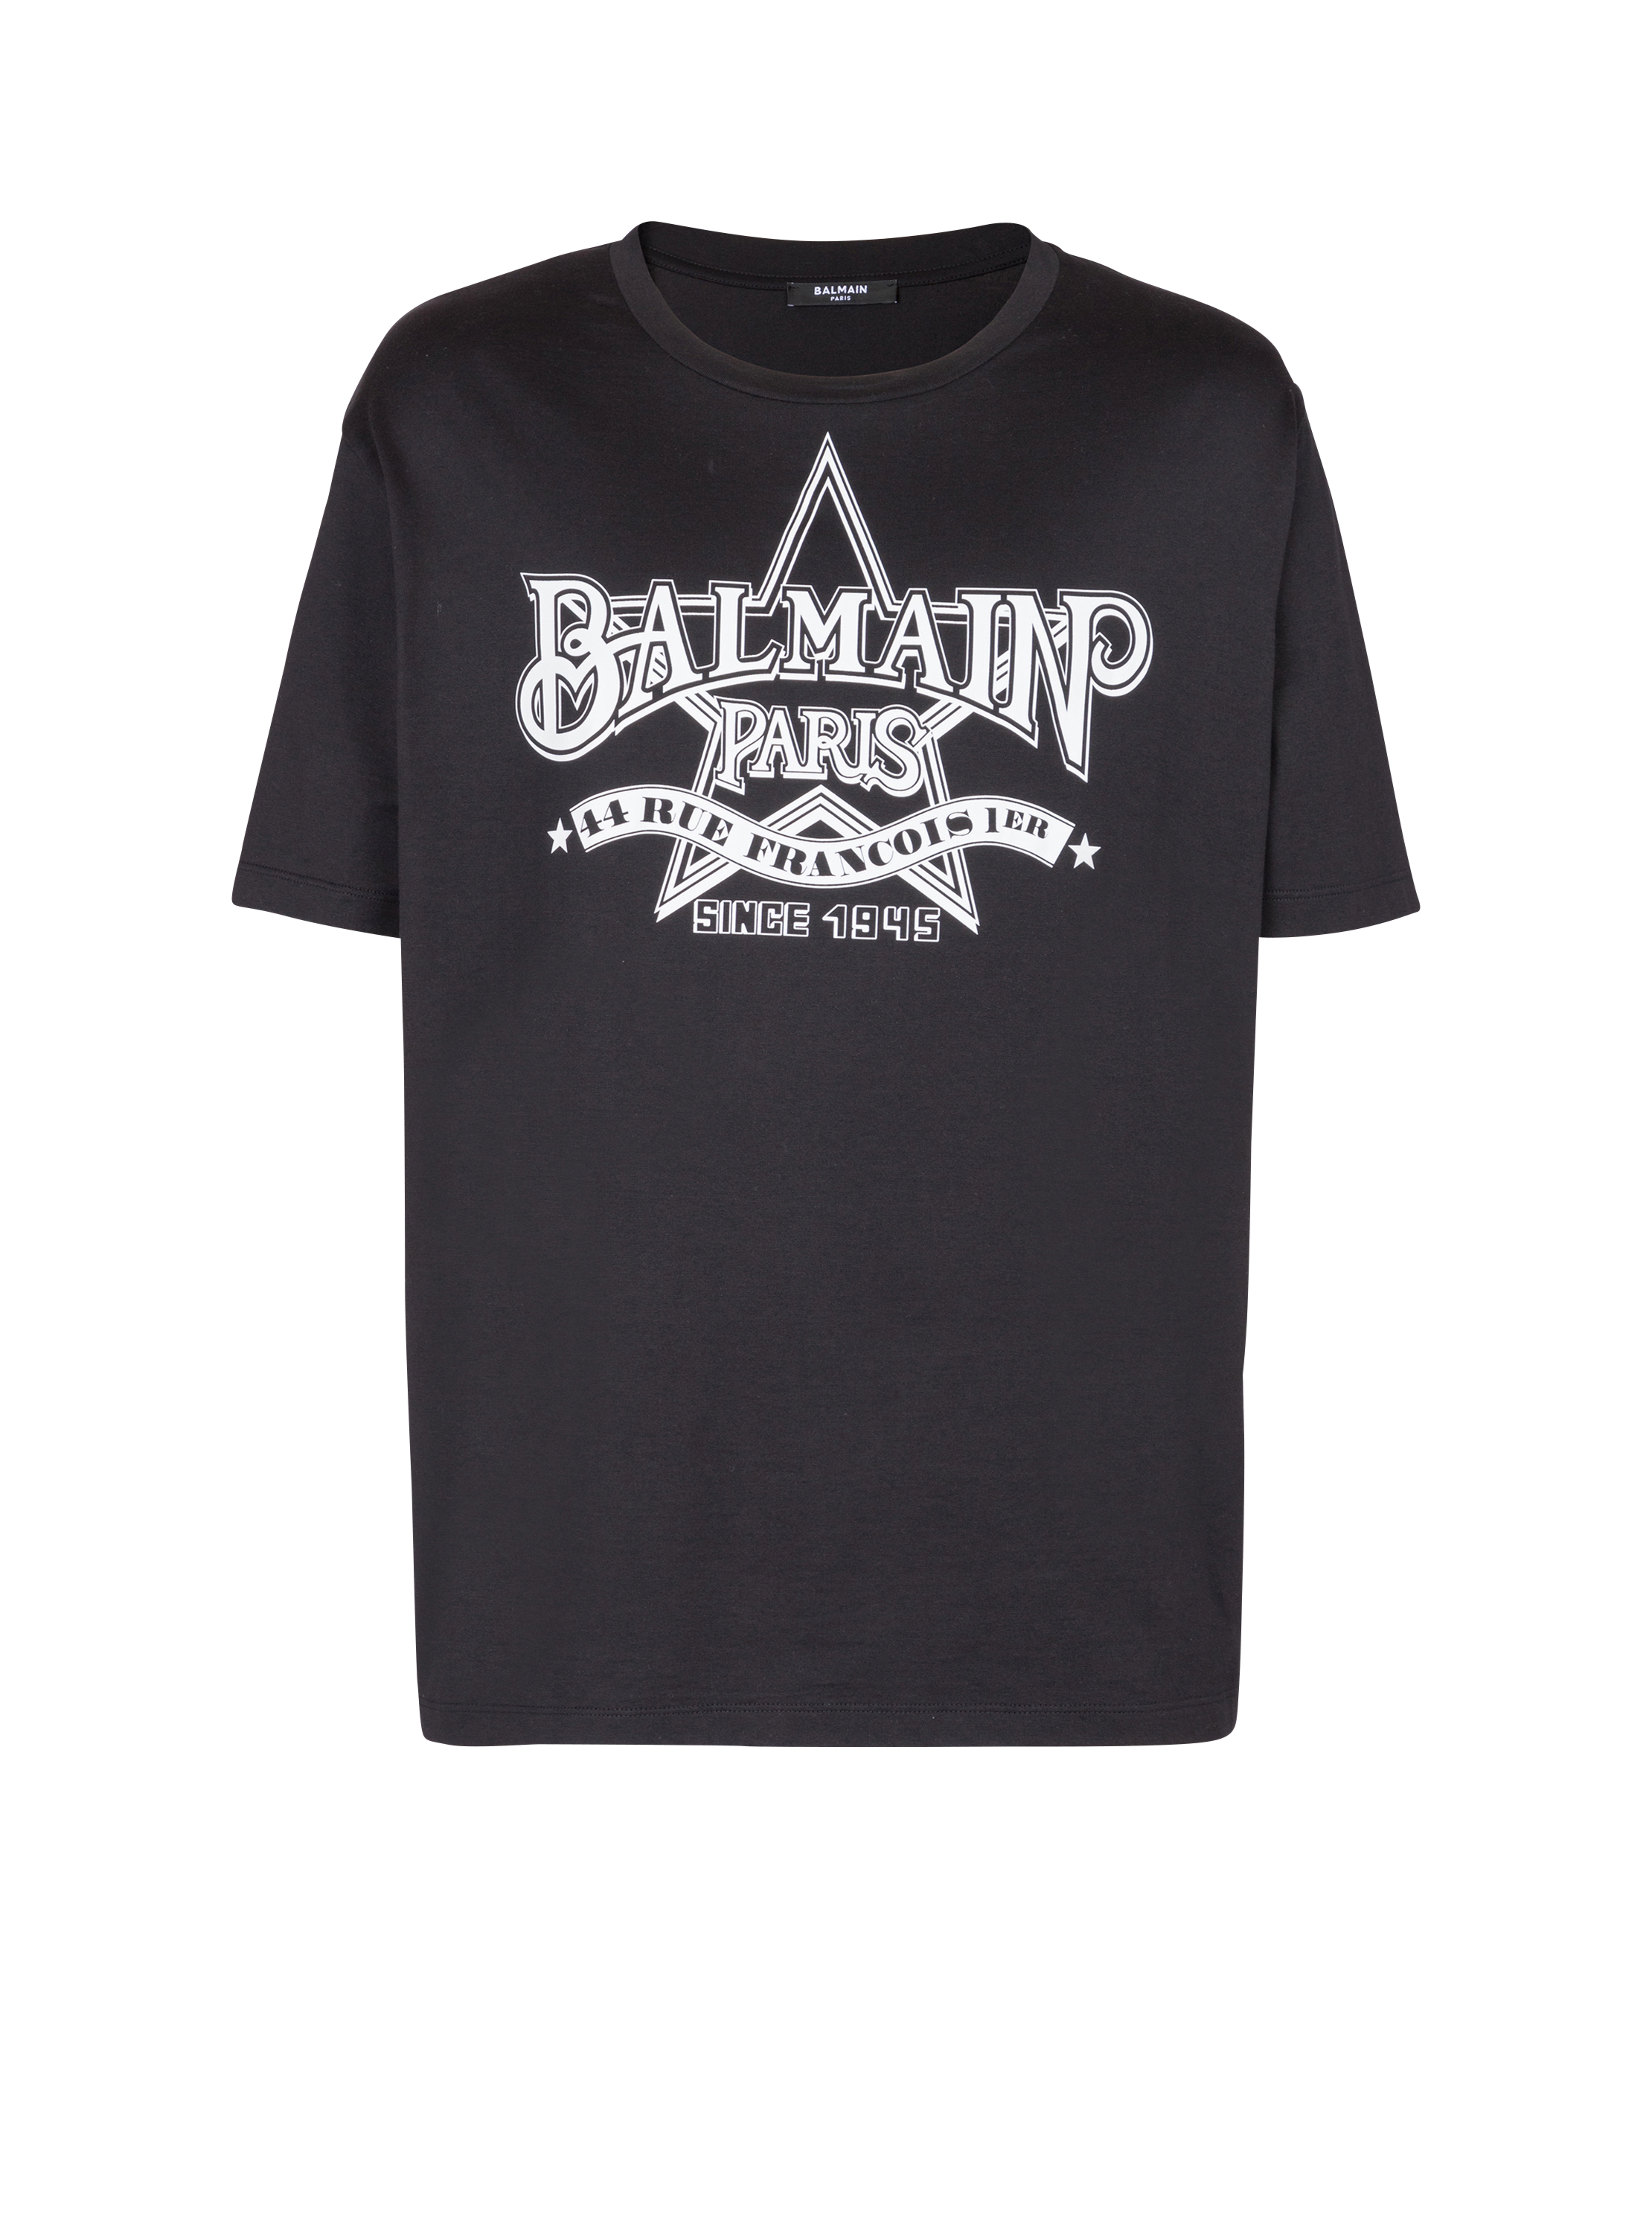 Balmain star T-shirt, black, hi-res